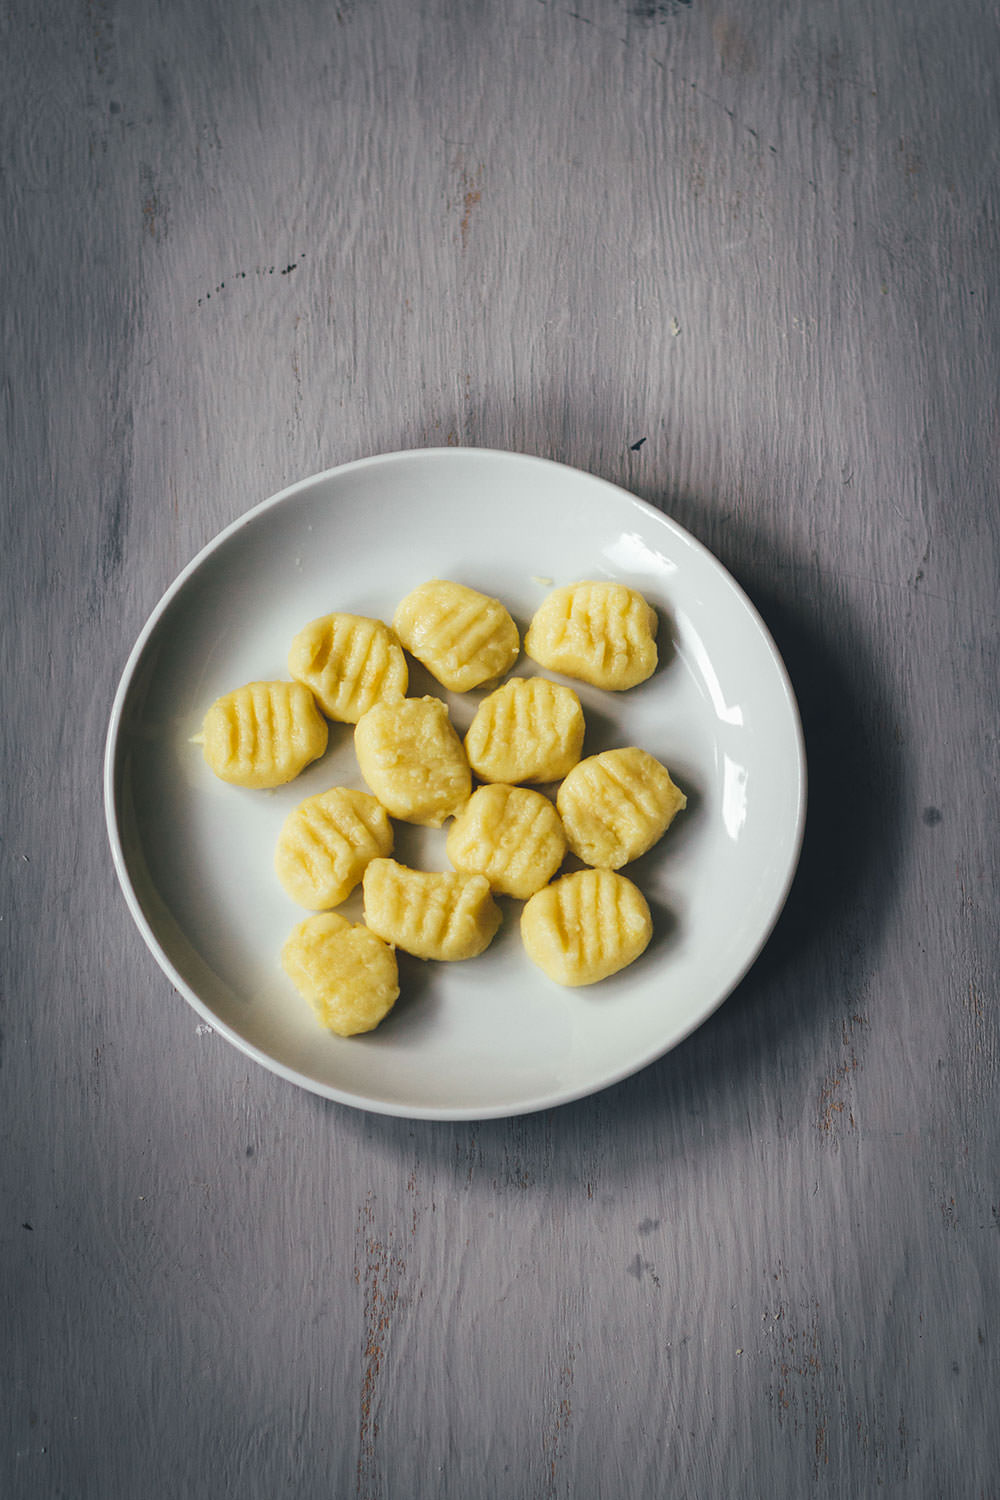 Grundrezept für Gnocchi | einfache Kartoffel-Gnocchi aus Italien | moeyskitchen.com #gnocchi #italienischeküche #italienischkochen #kartoffelklöße #rezept #foodblog #foodblogger #grundrezept #selbstgemacht